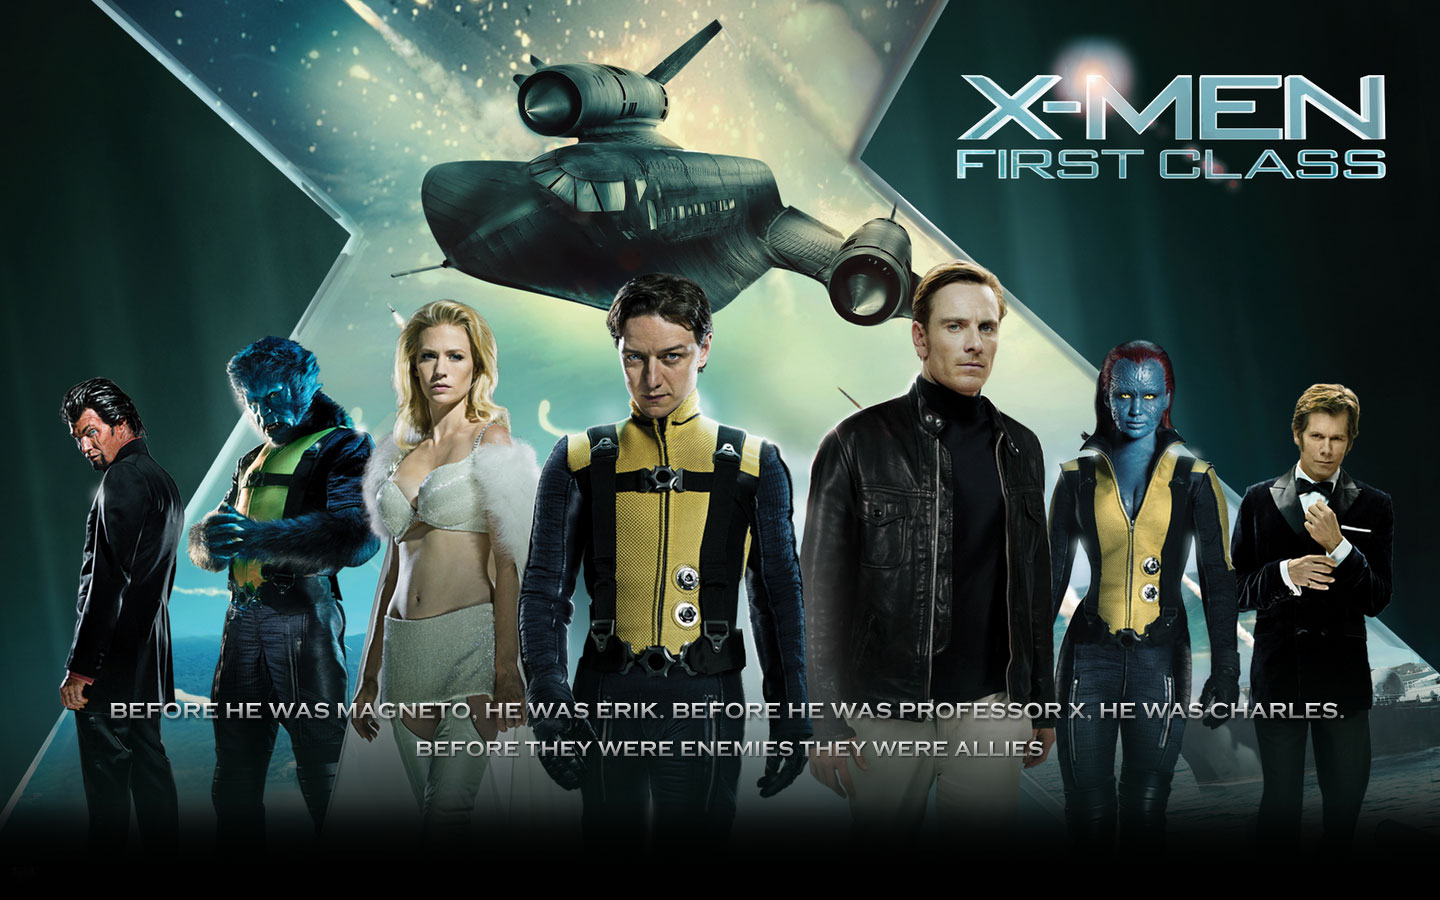 X-Men: First Class #2